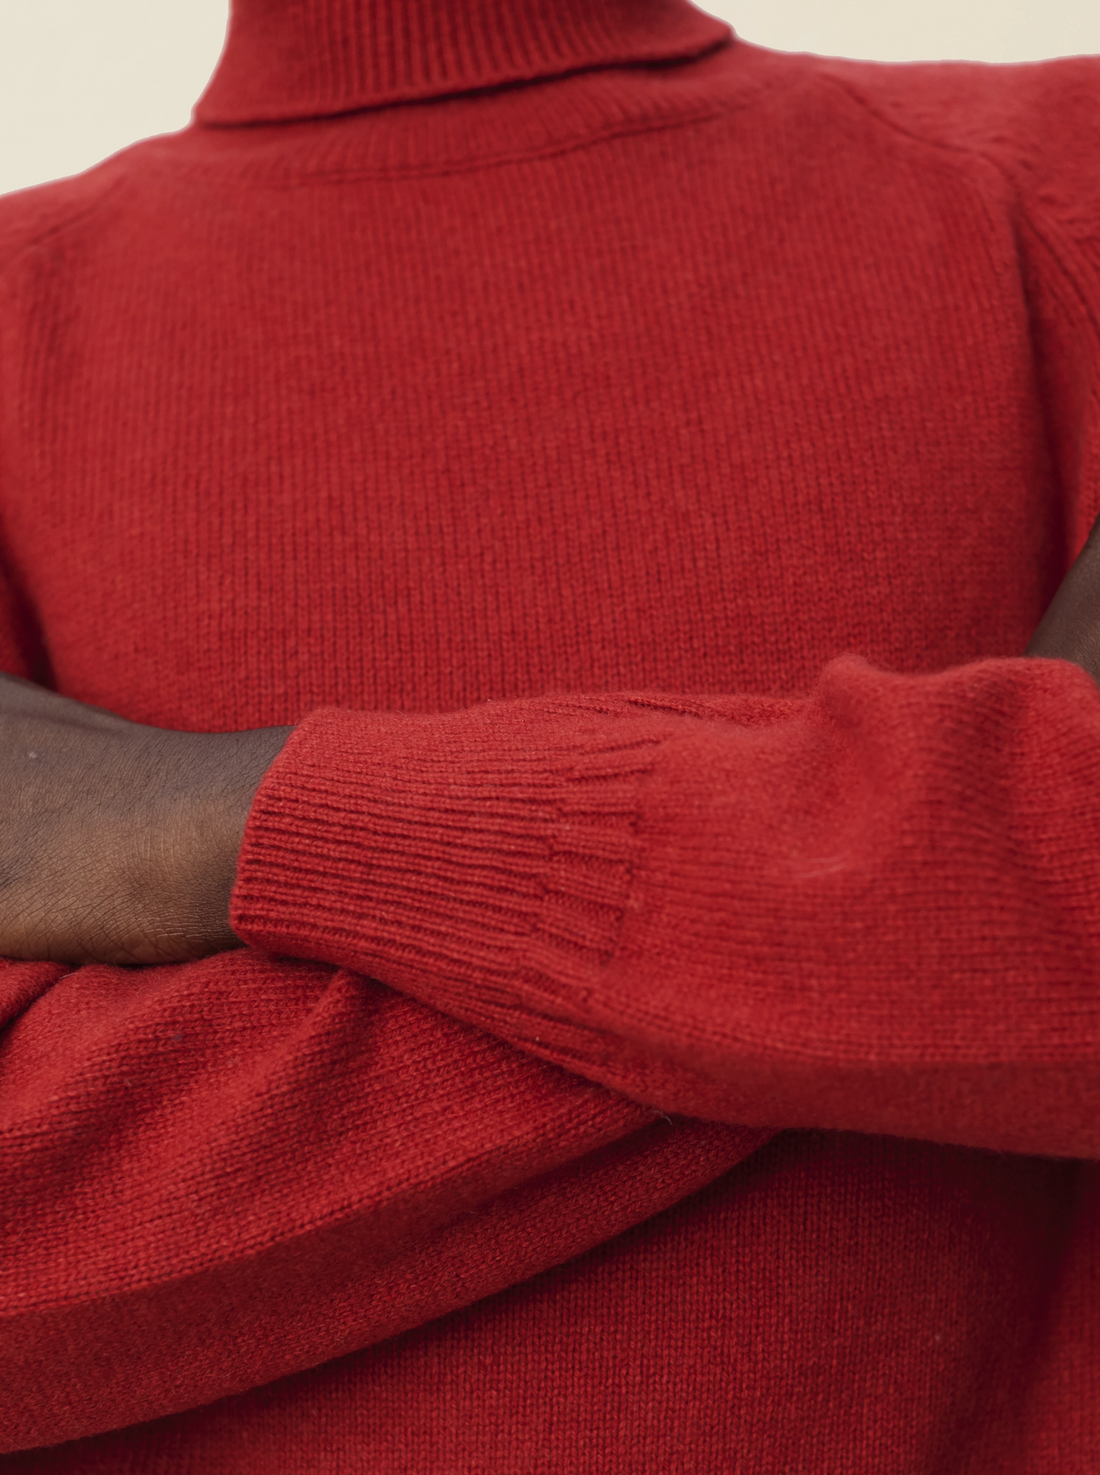 Men's Red cashmere turtleneck